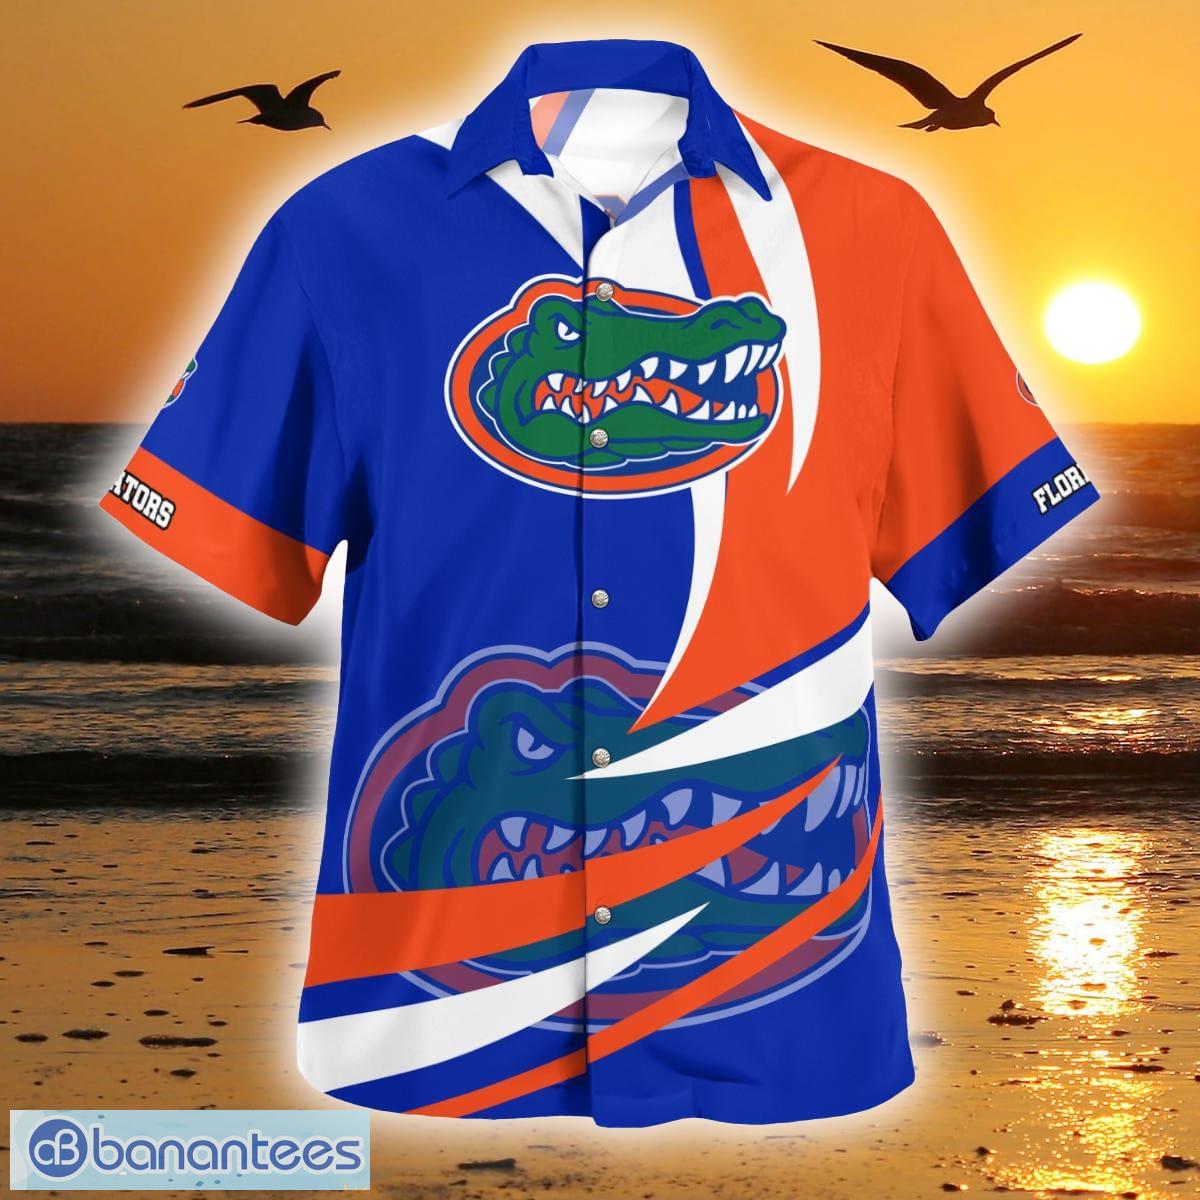 Florida Gators Fan Jerseys for sale